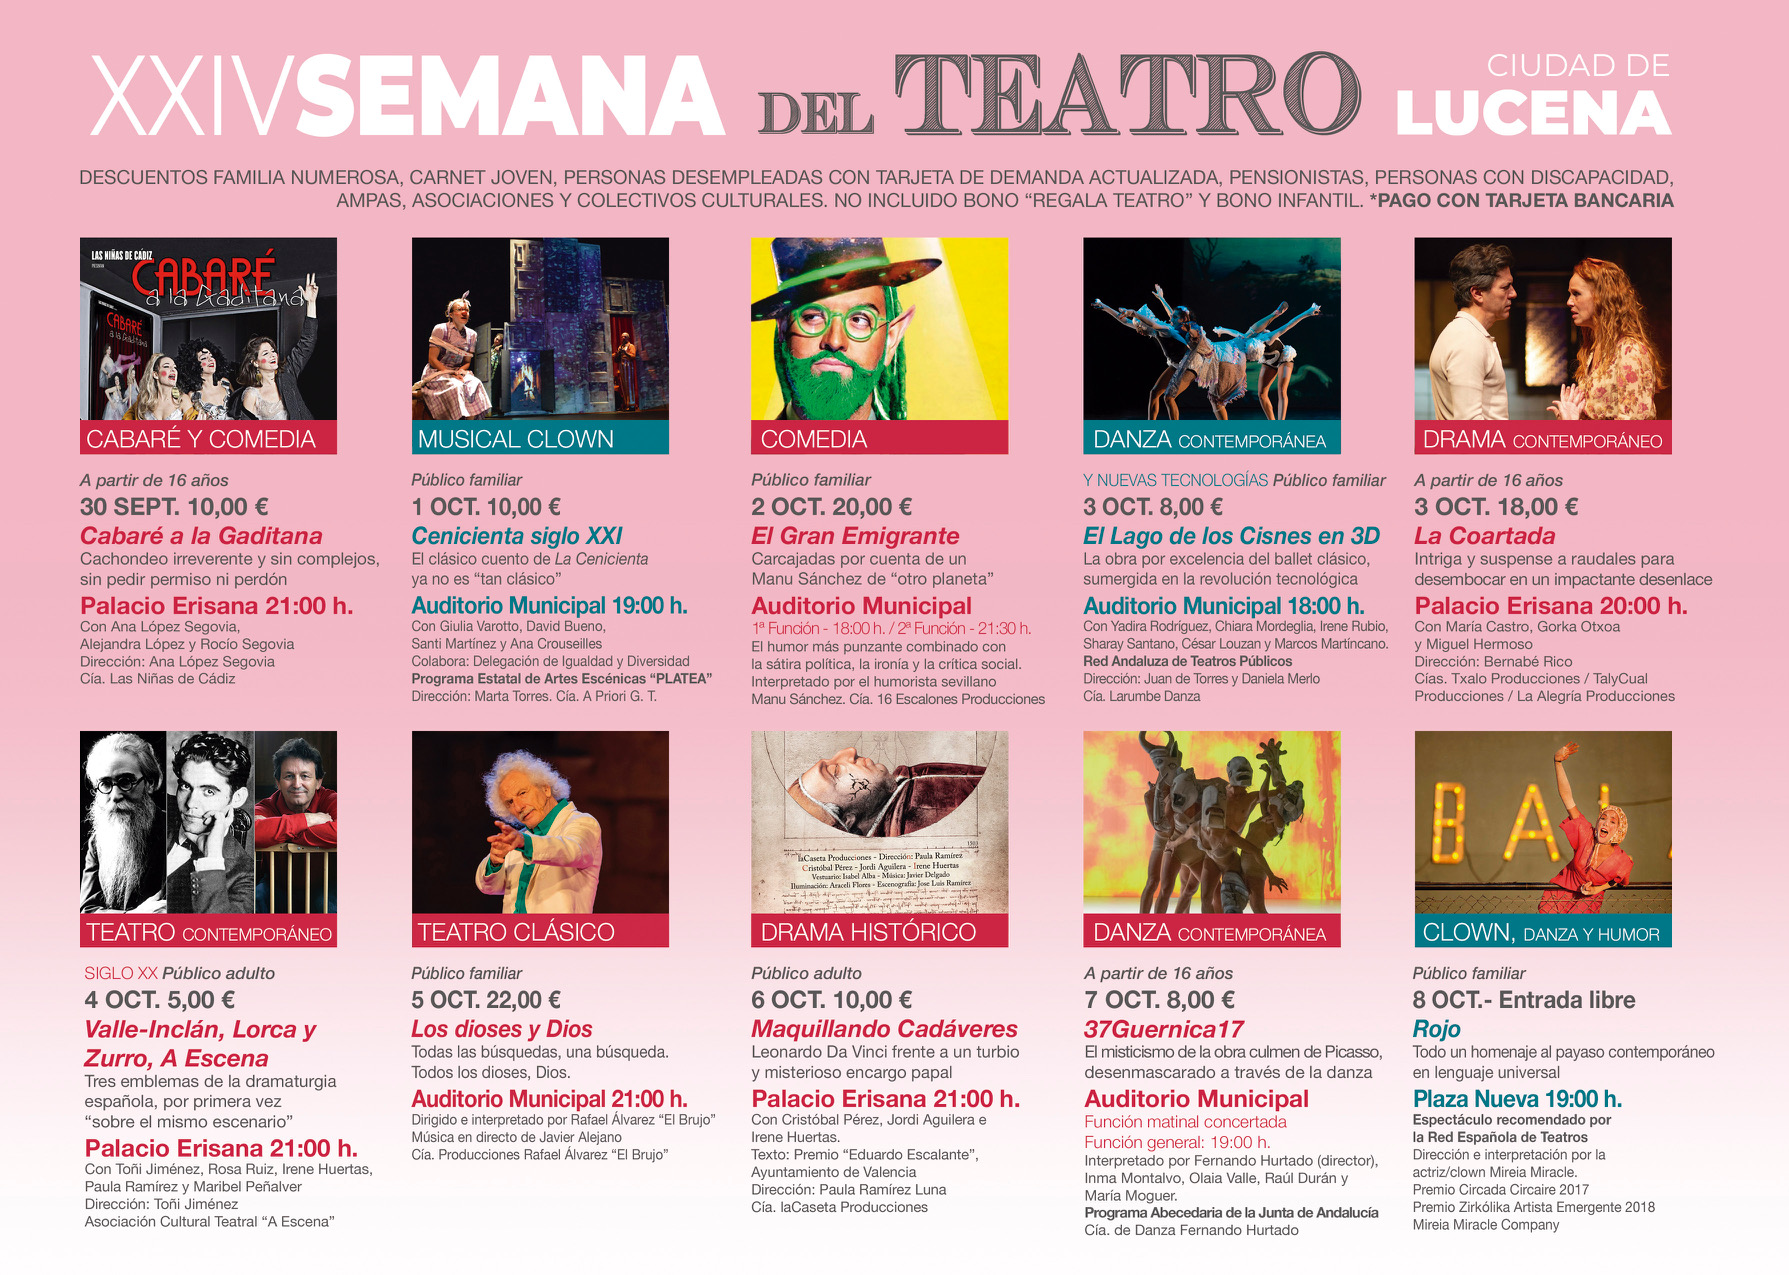 La XXIV semana del Teatro llegará a Lucena